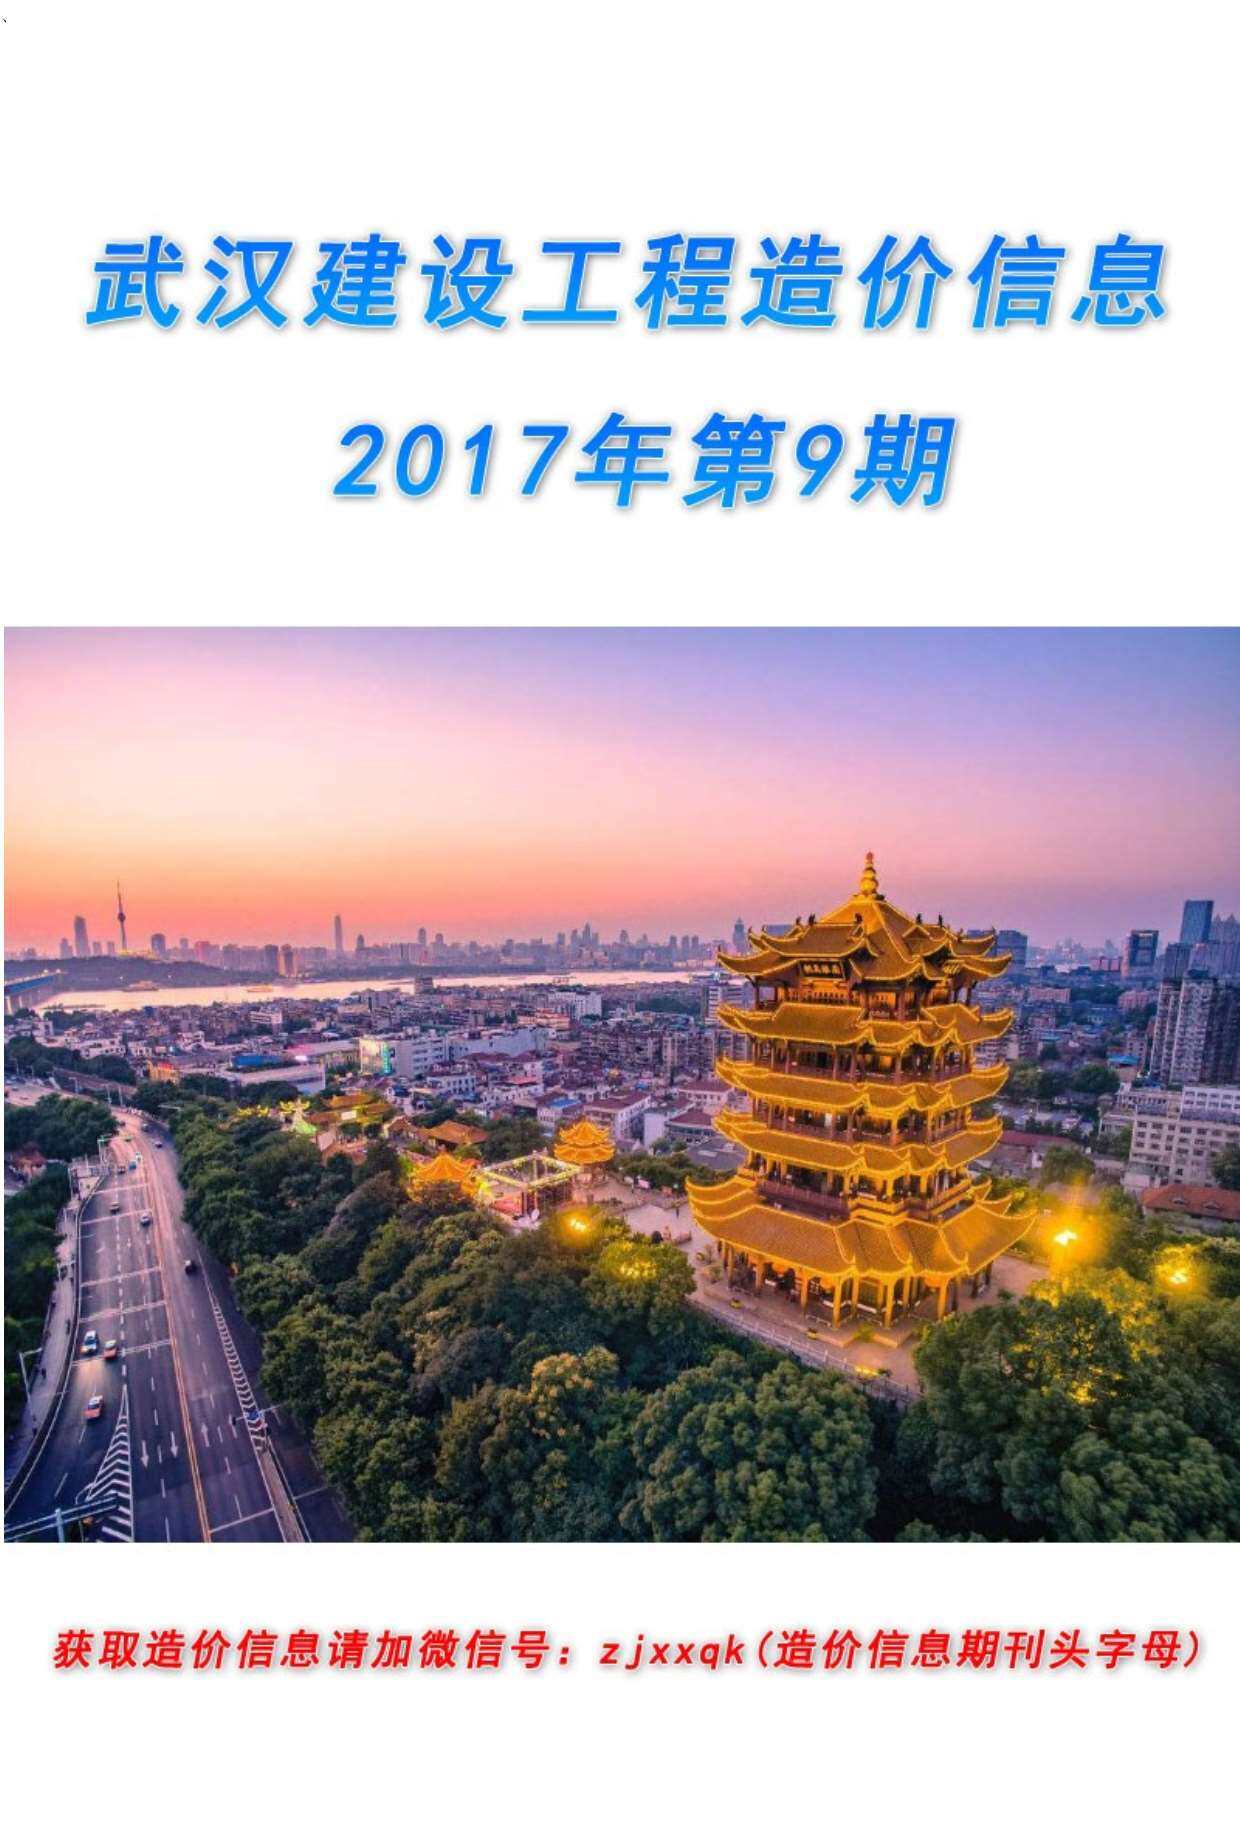 武汉市2017年第9期工程造价信息pdf电子版